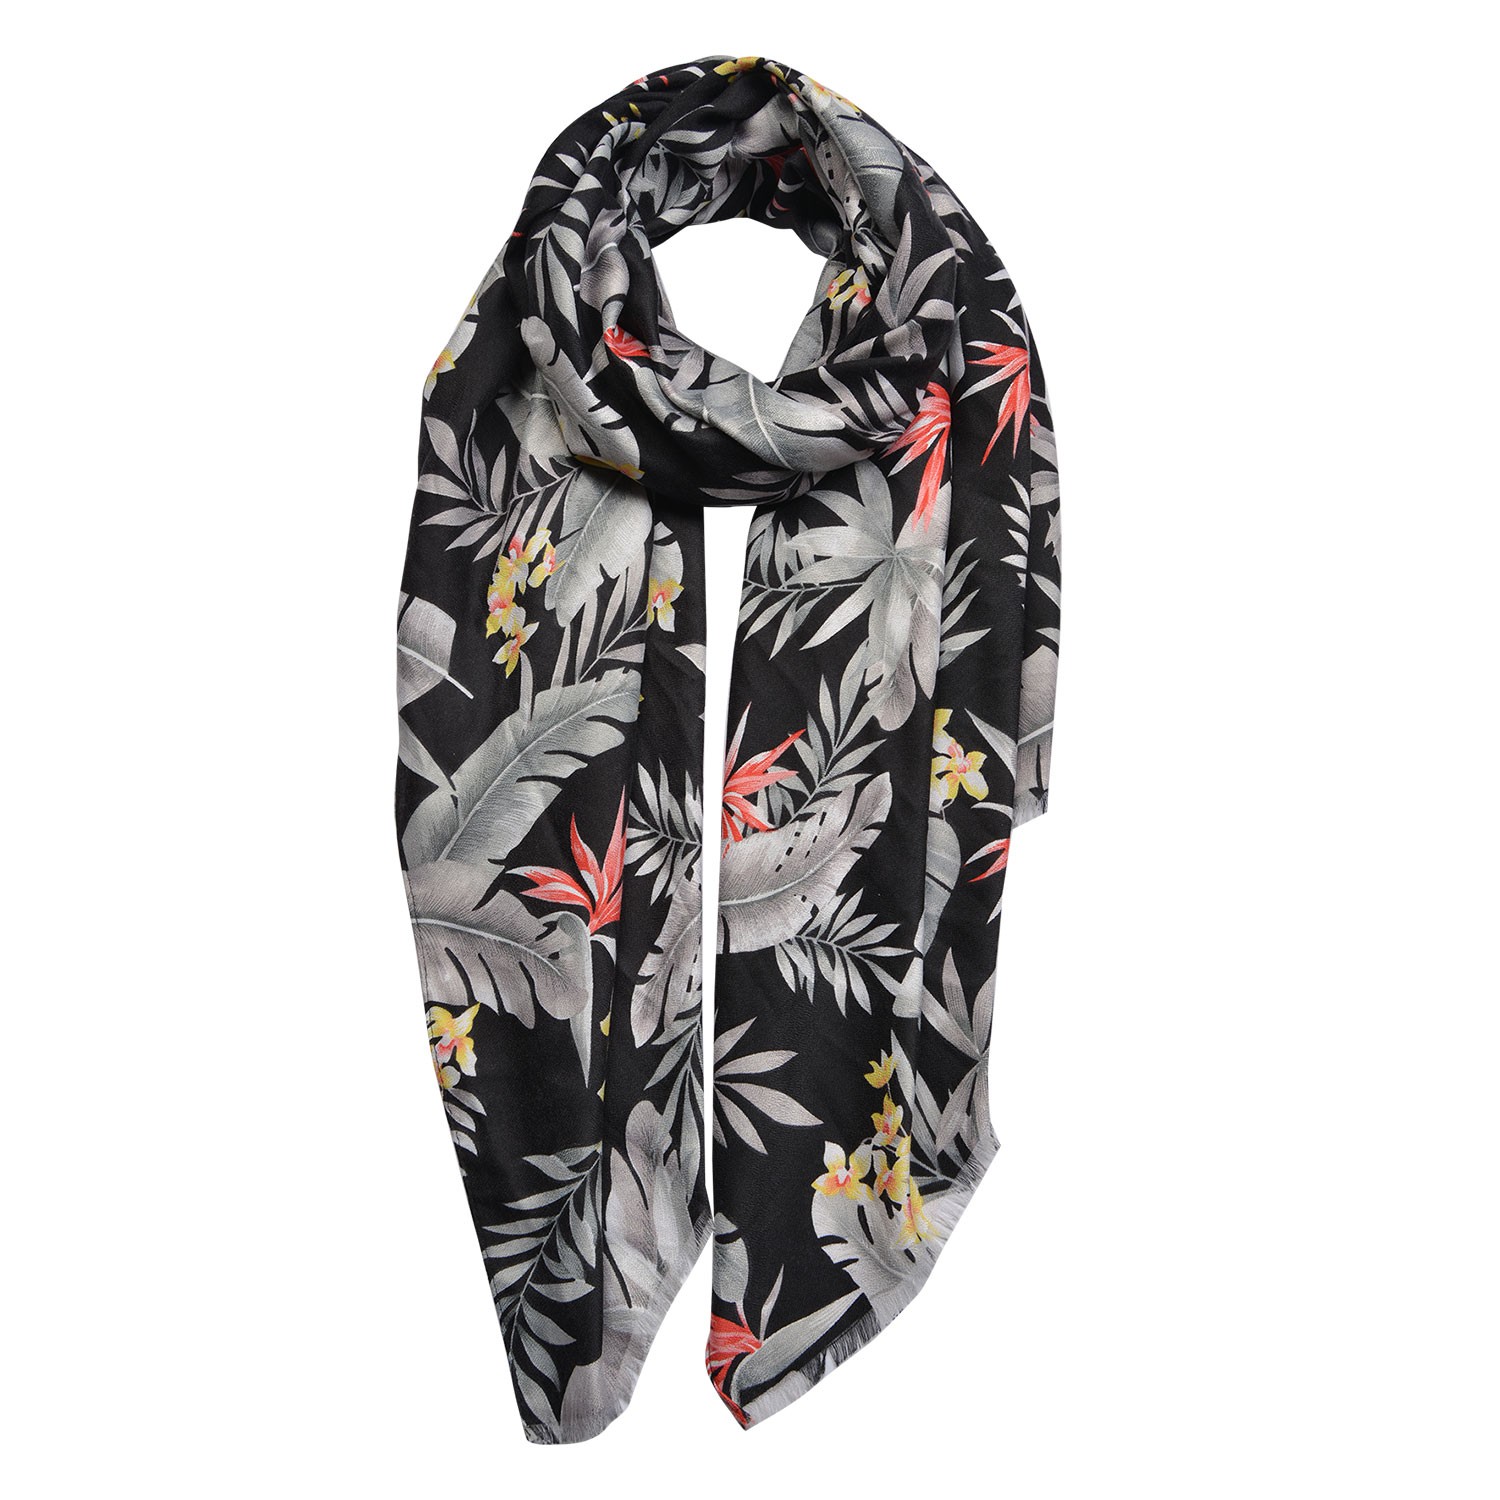 Černý šátek s barevnými květy a listy - 80*180 cm Clayre & Eef